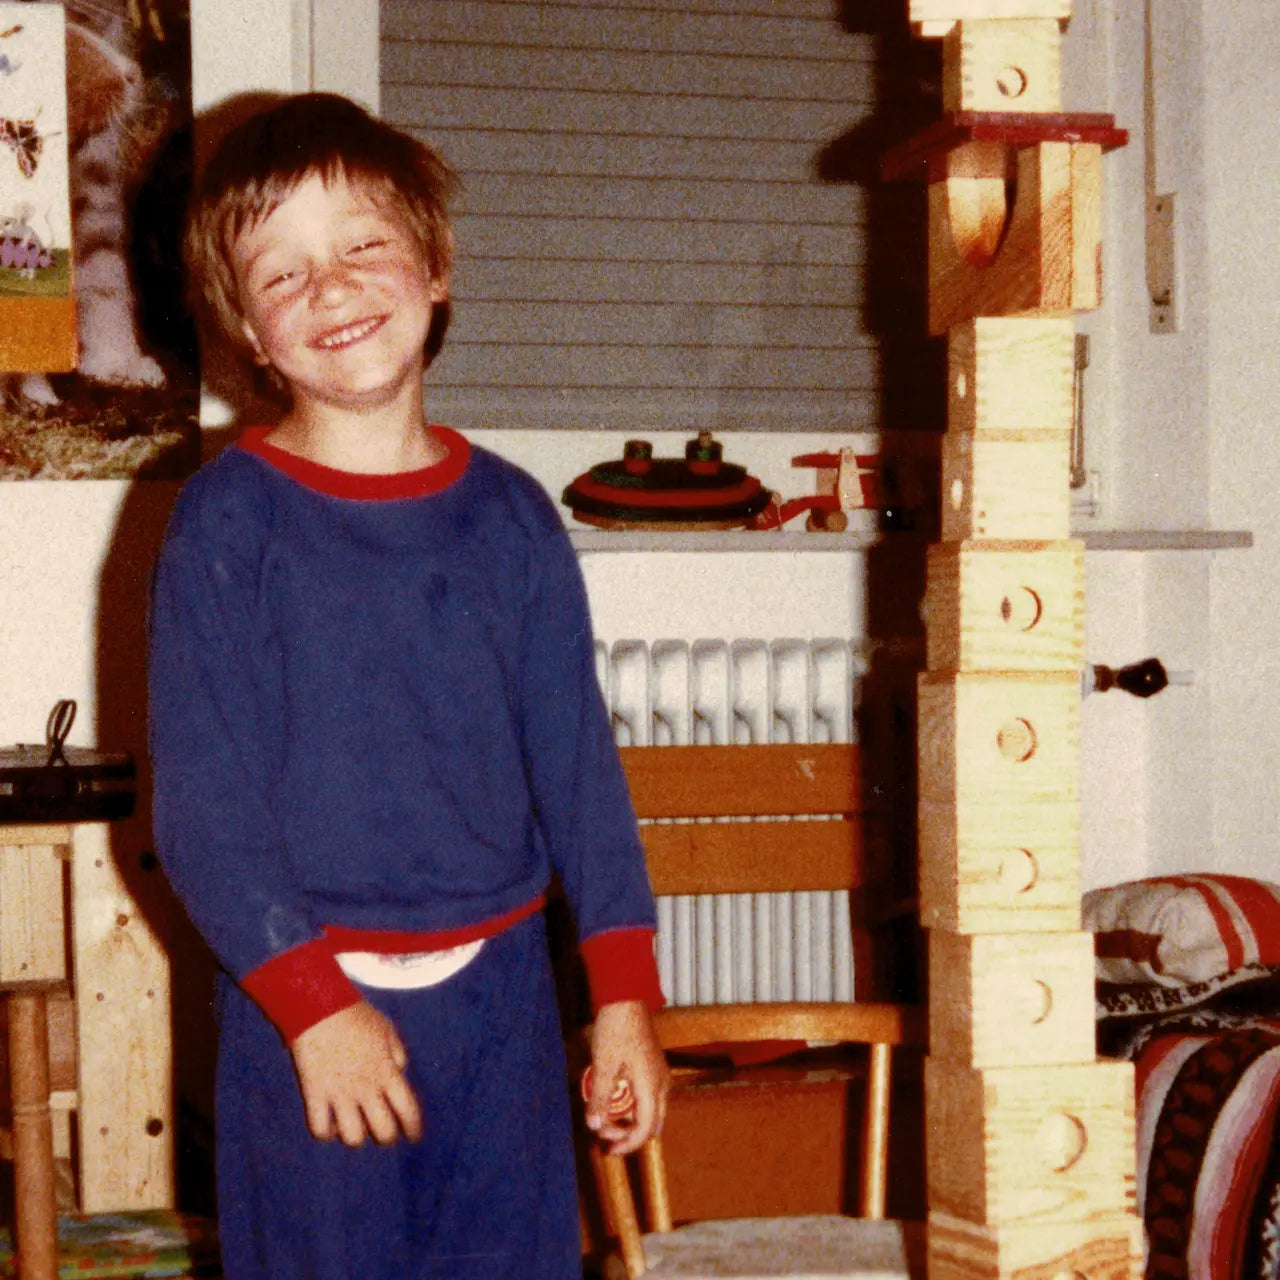 ca. 50 Jahre altes Bild von Gründer Christoph Matz im alter von 3 Jahren der stolz neben seinem Turm aus der Ur-Box, dem Vorläufer der Matzbox, in die Kamera lacht 